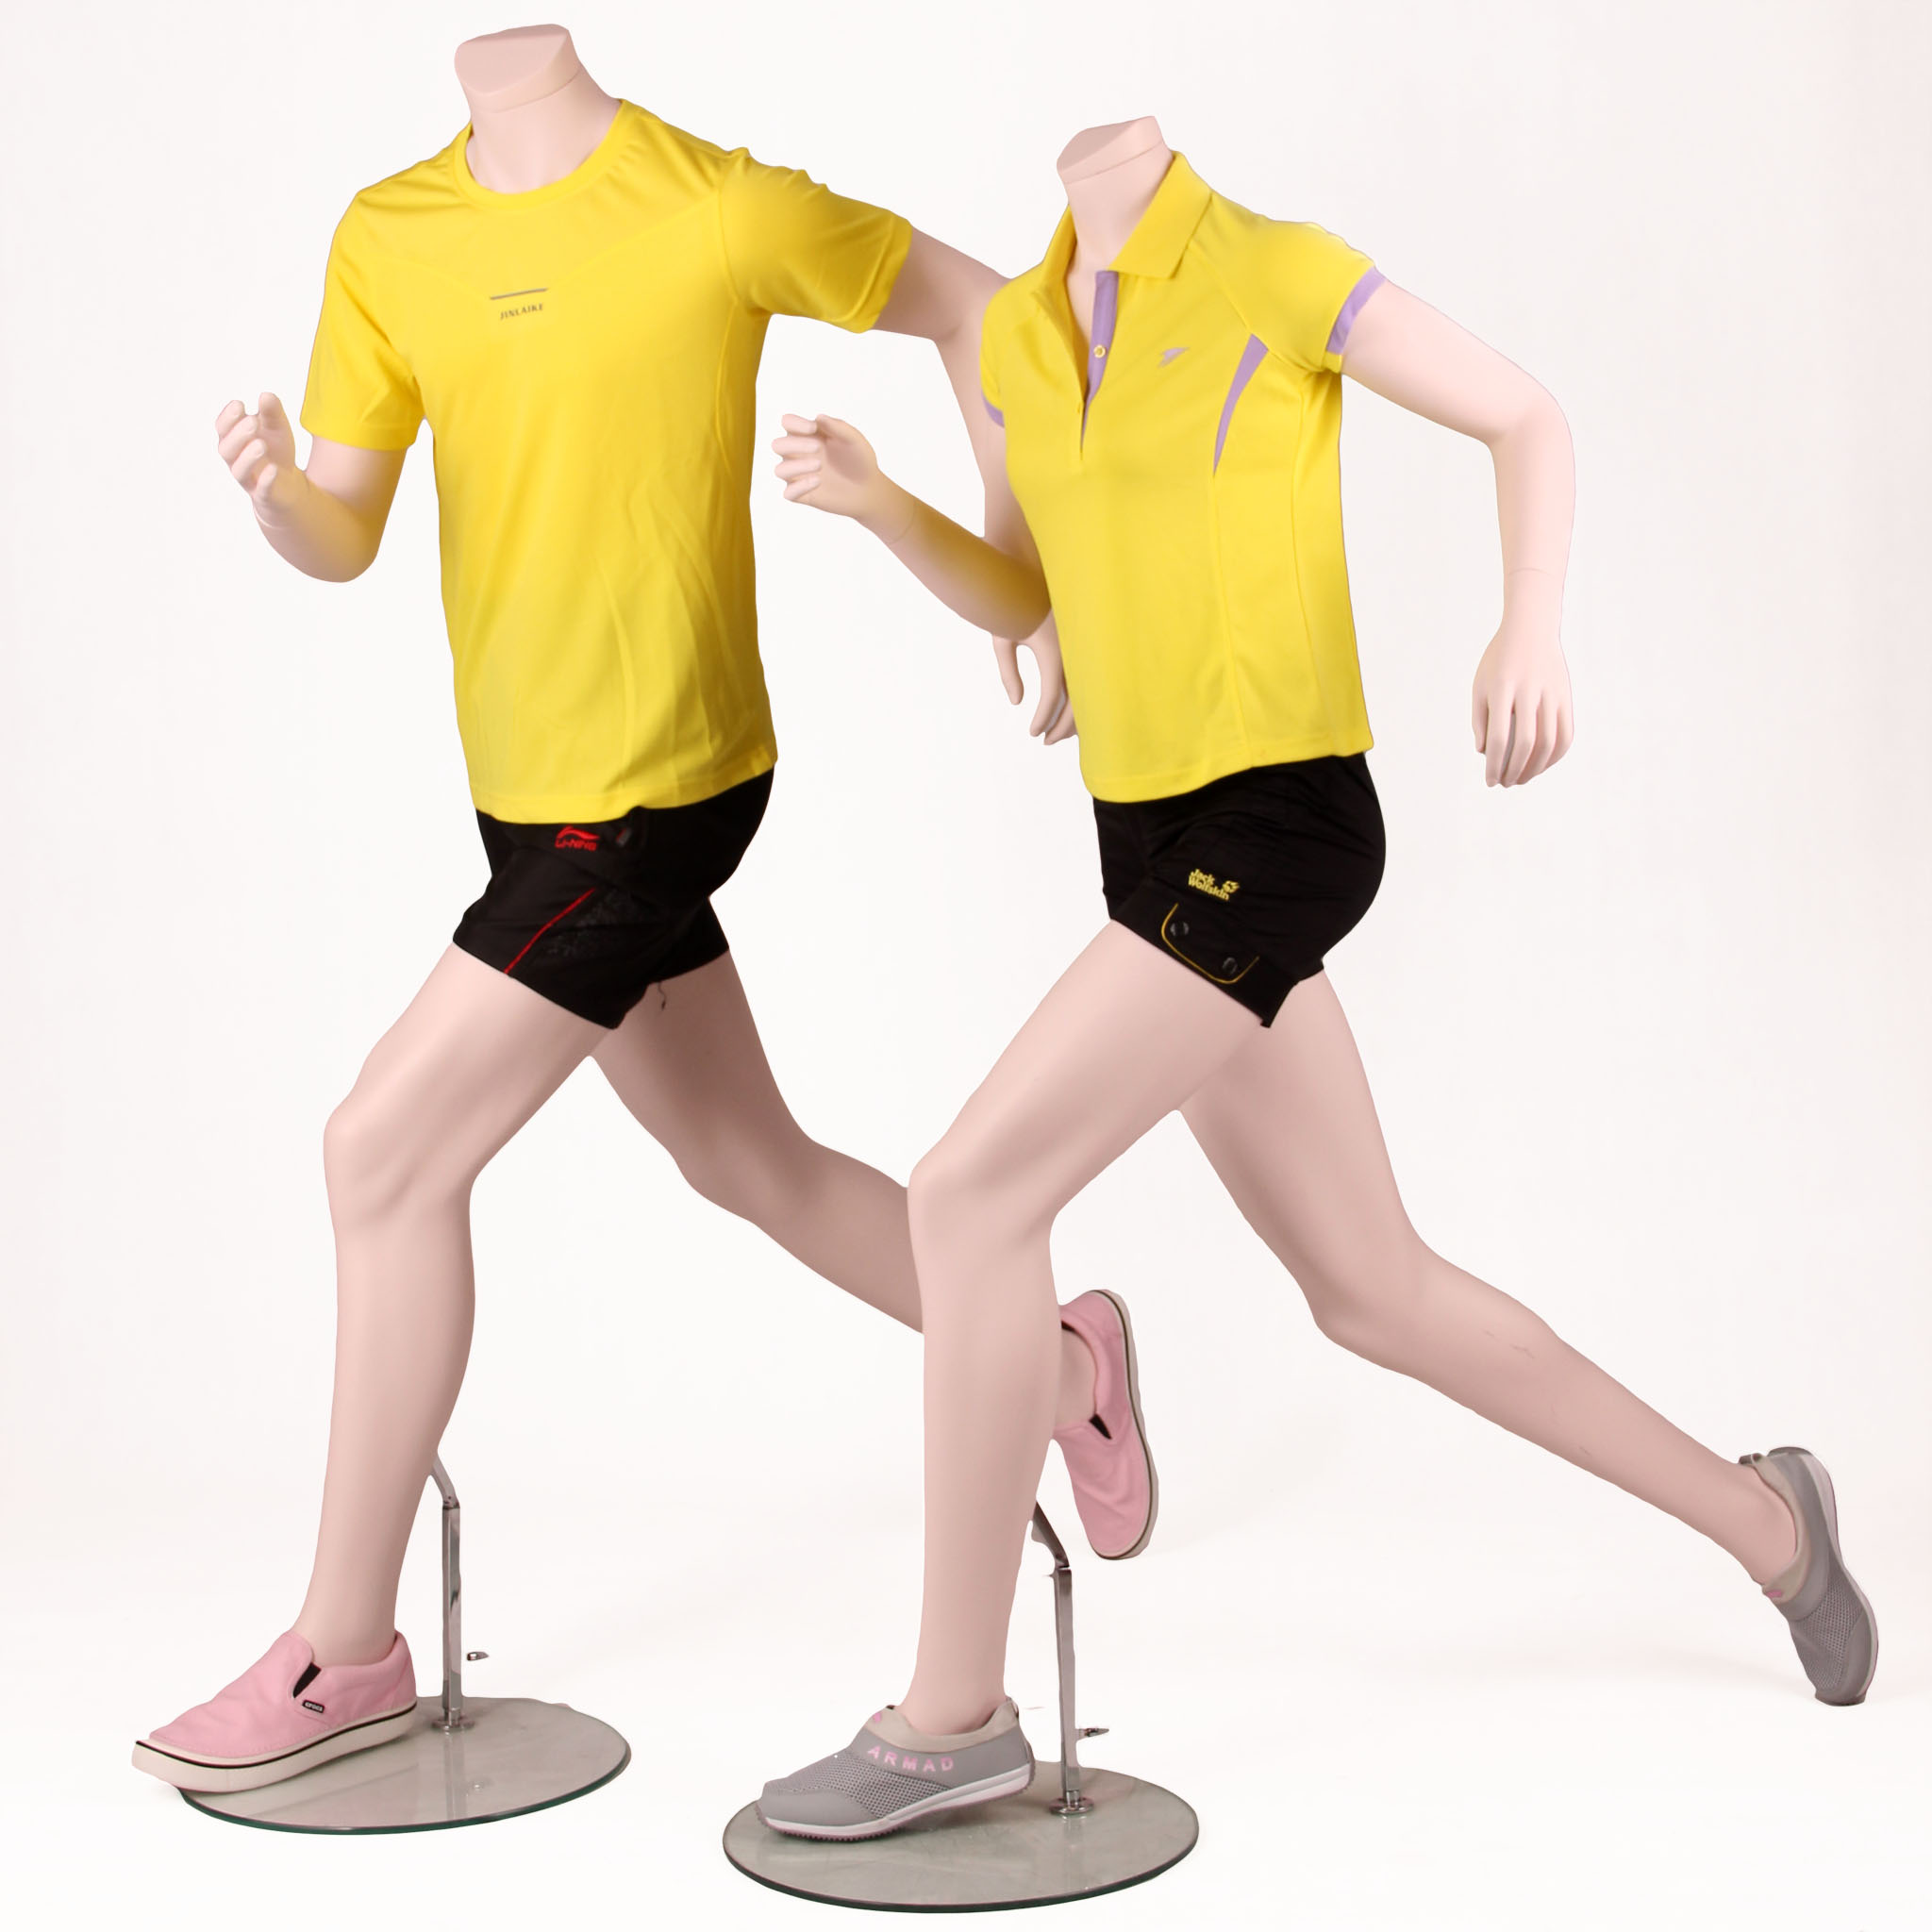 Maniquí deportivo de alta calidad que corre masculino y femenino maniquí móvil de cuerpo completo (WPM)